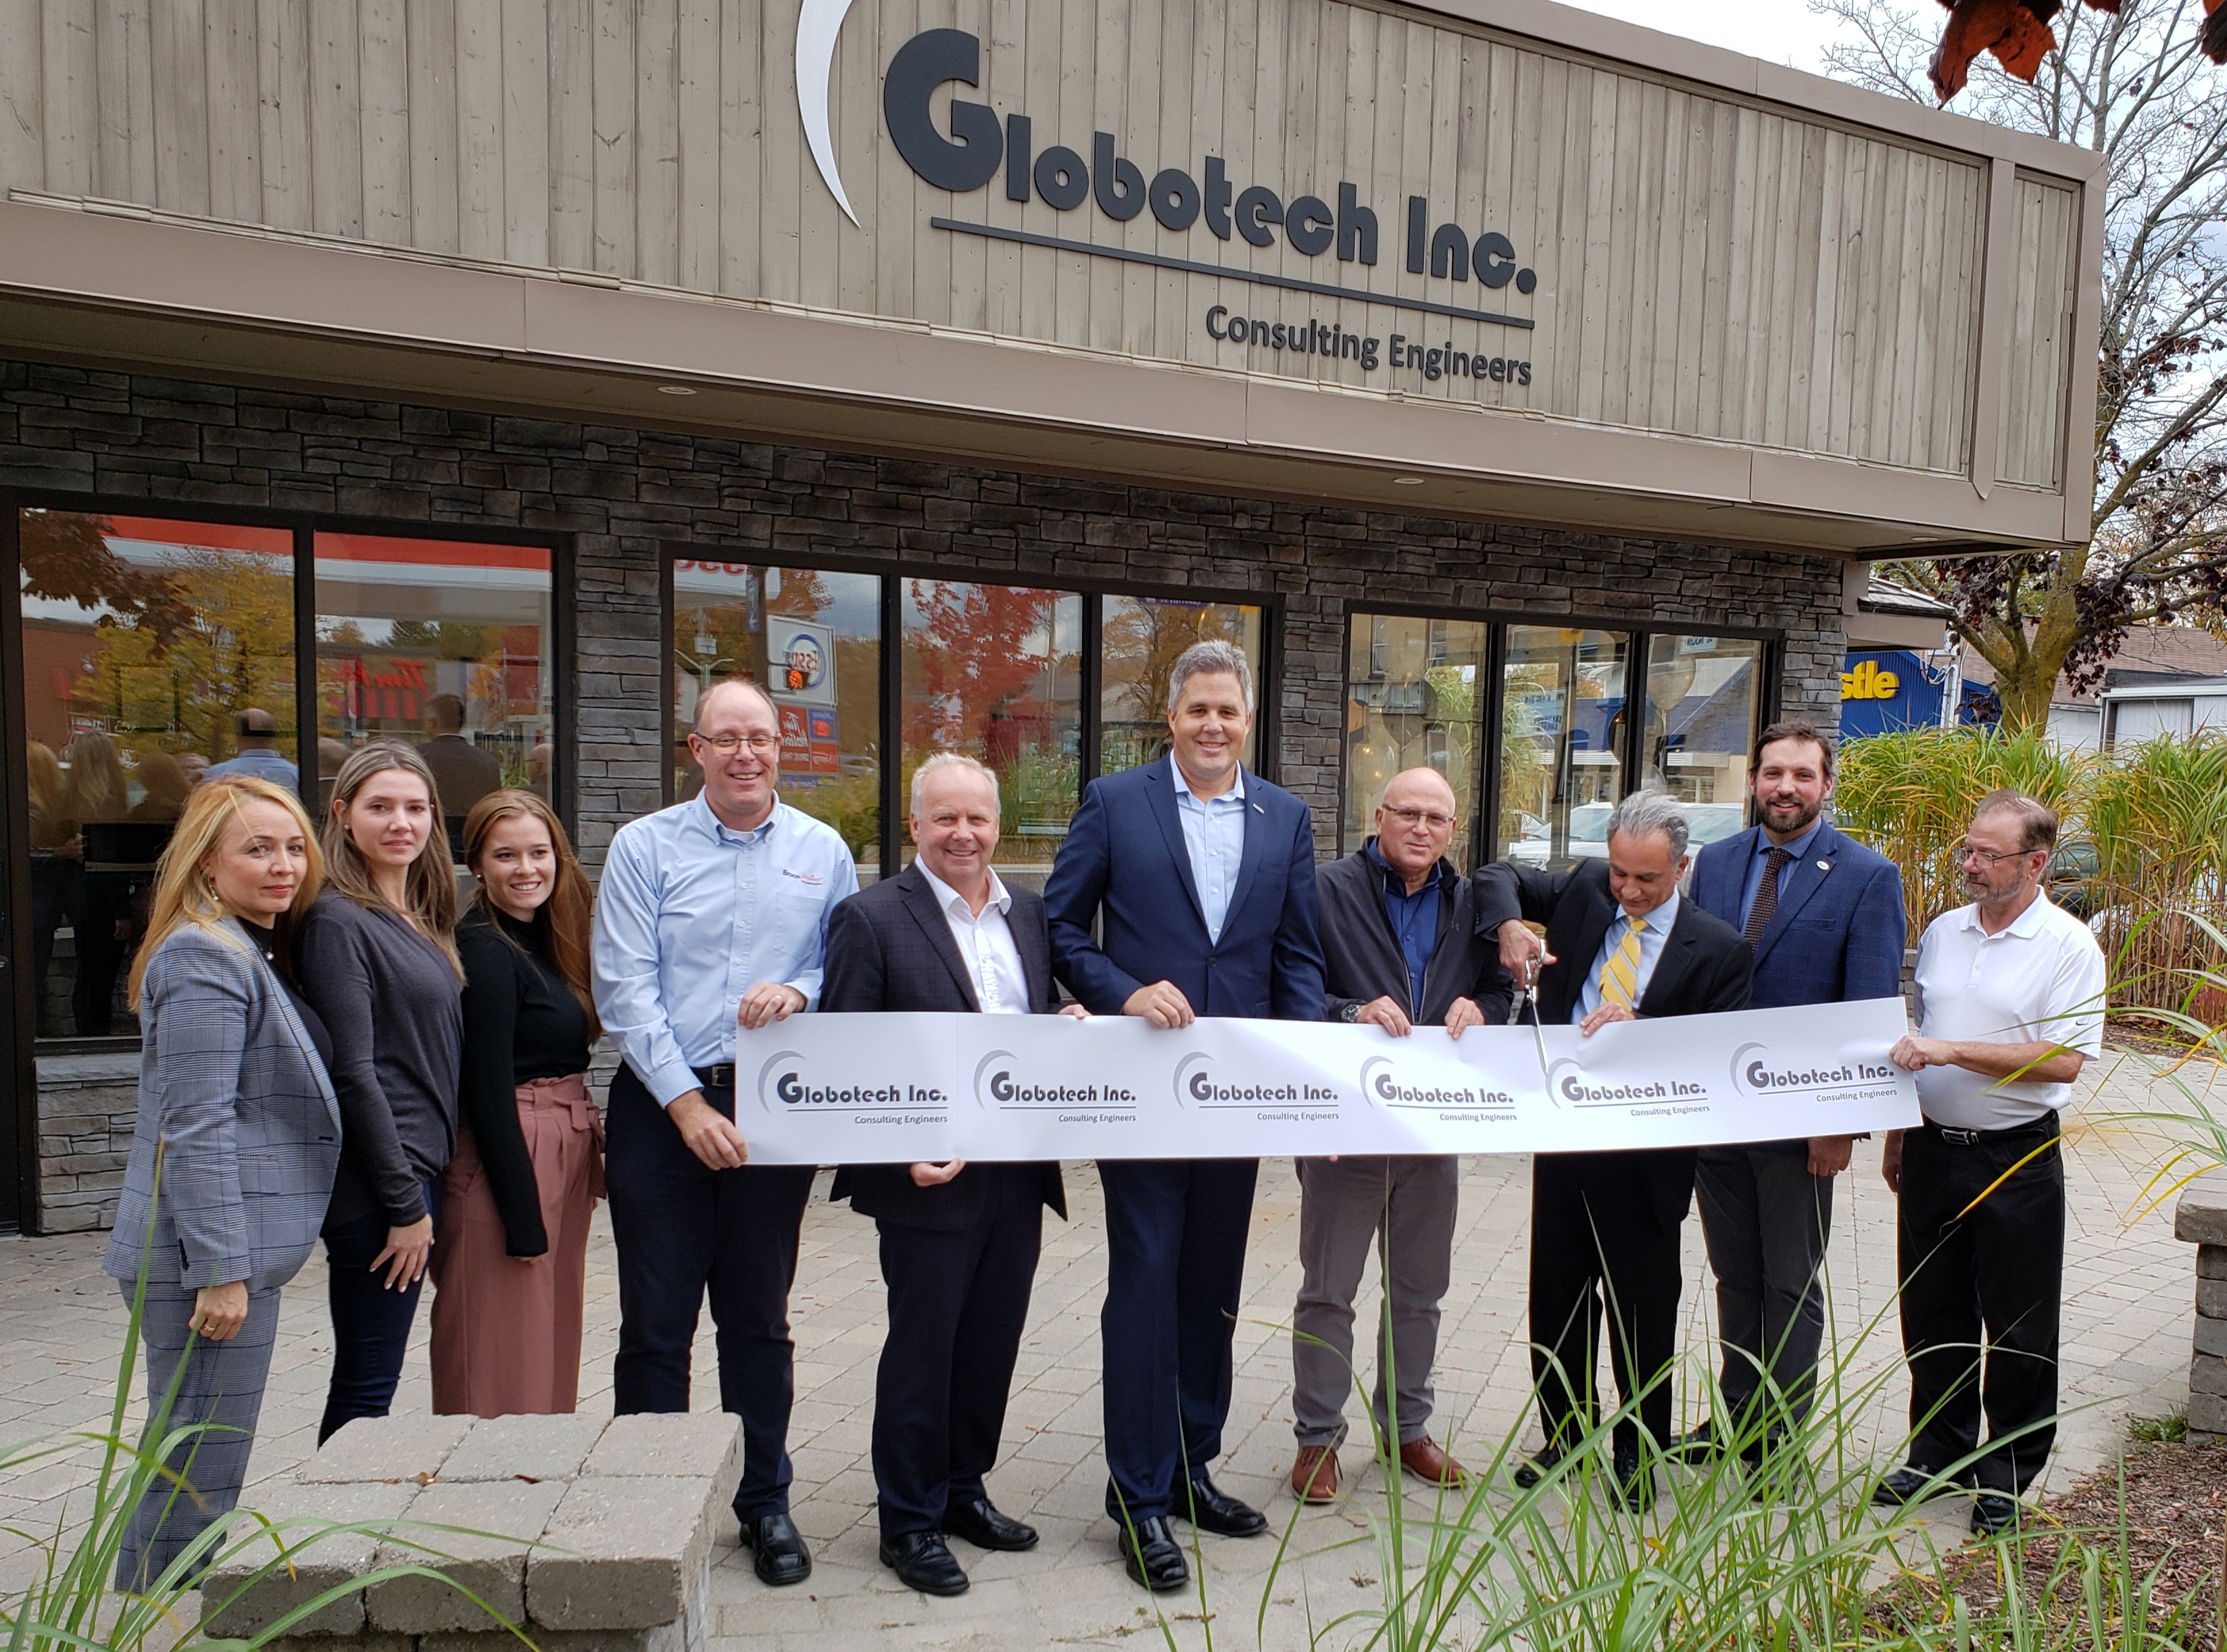 Dignitaries cut ribbon at Globotech Inc. office